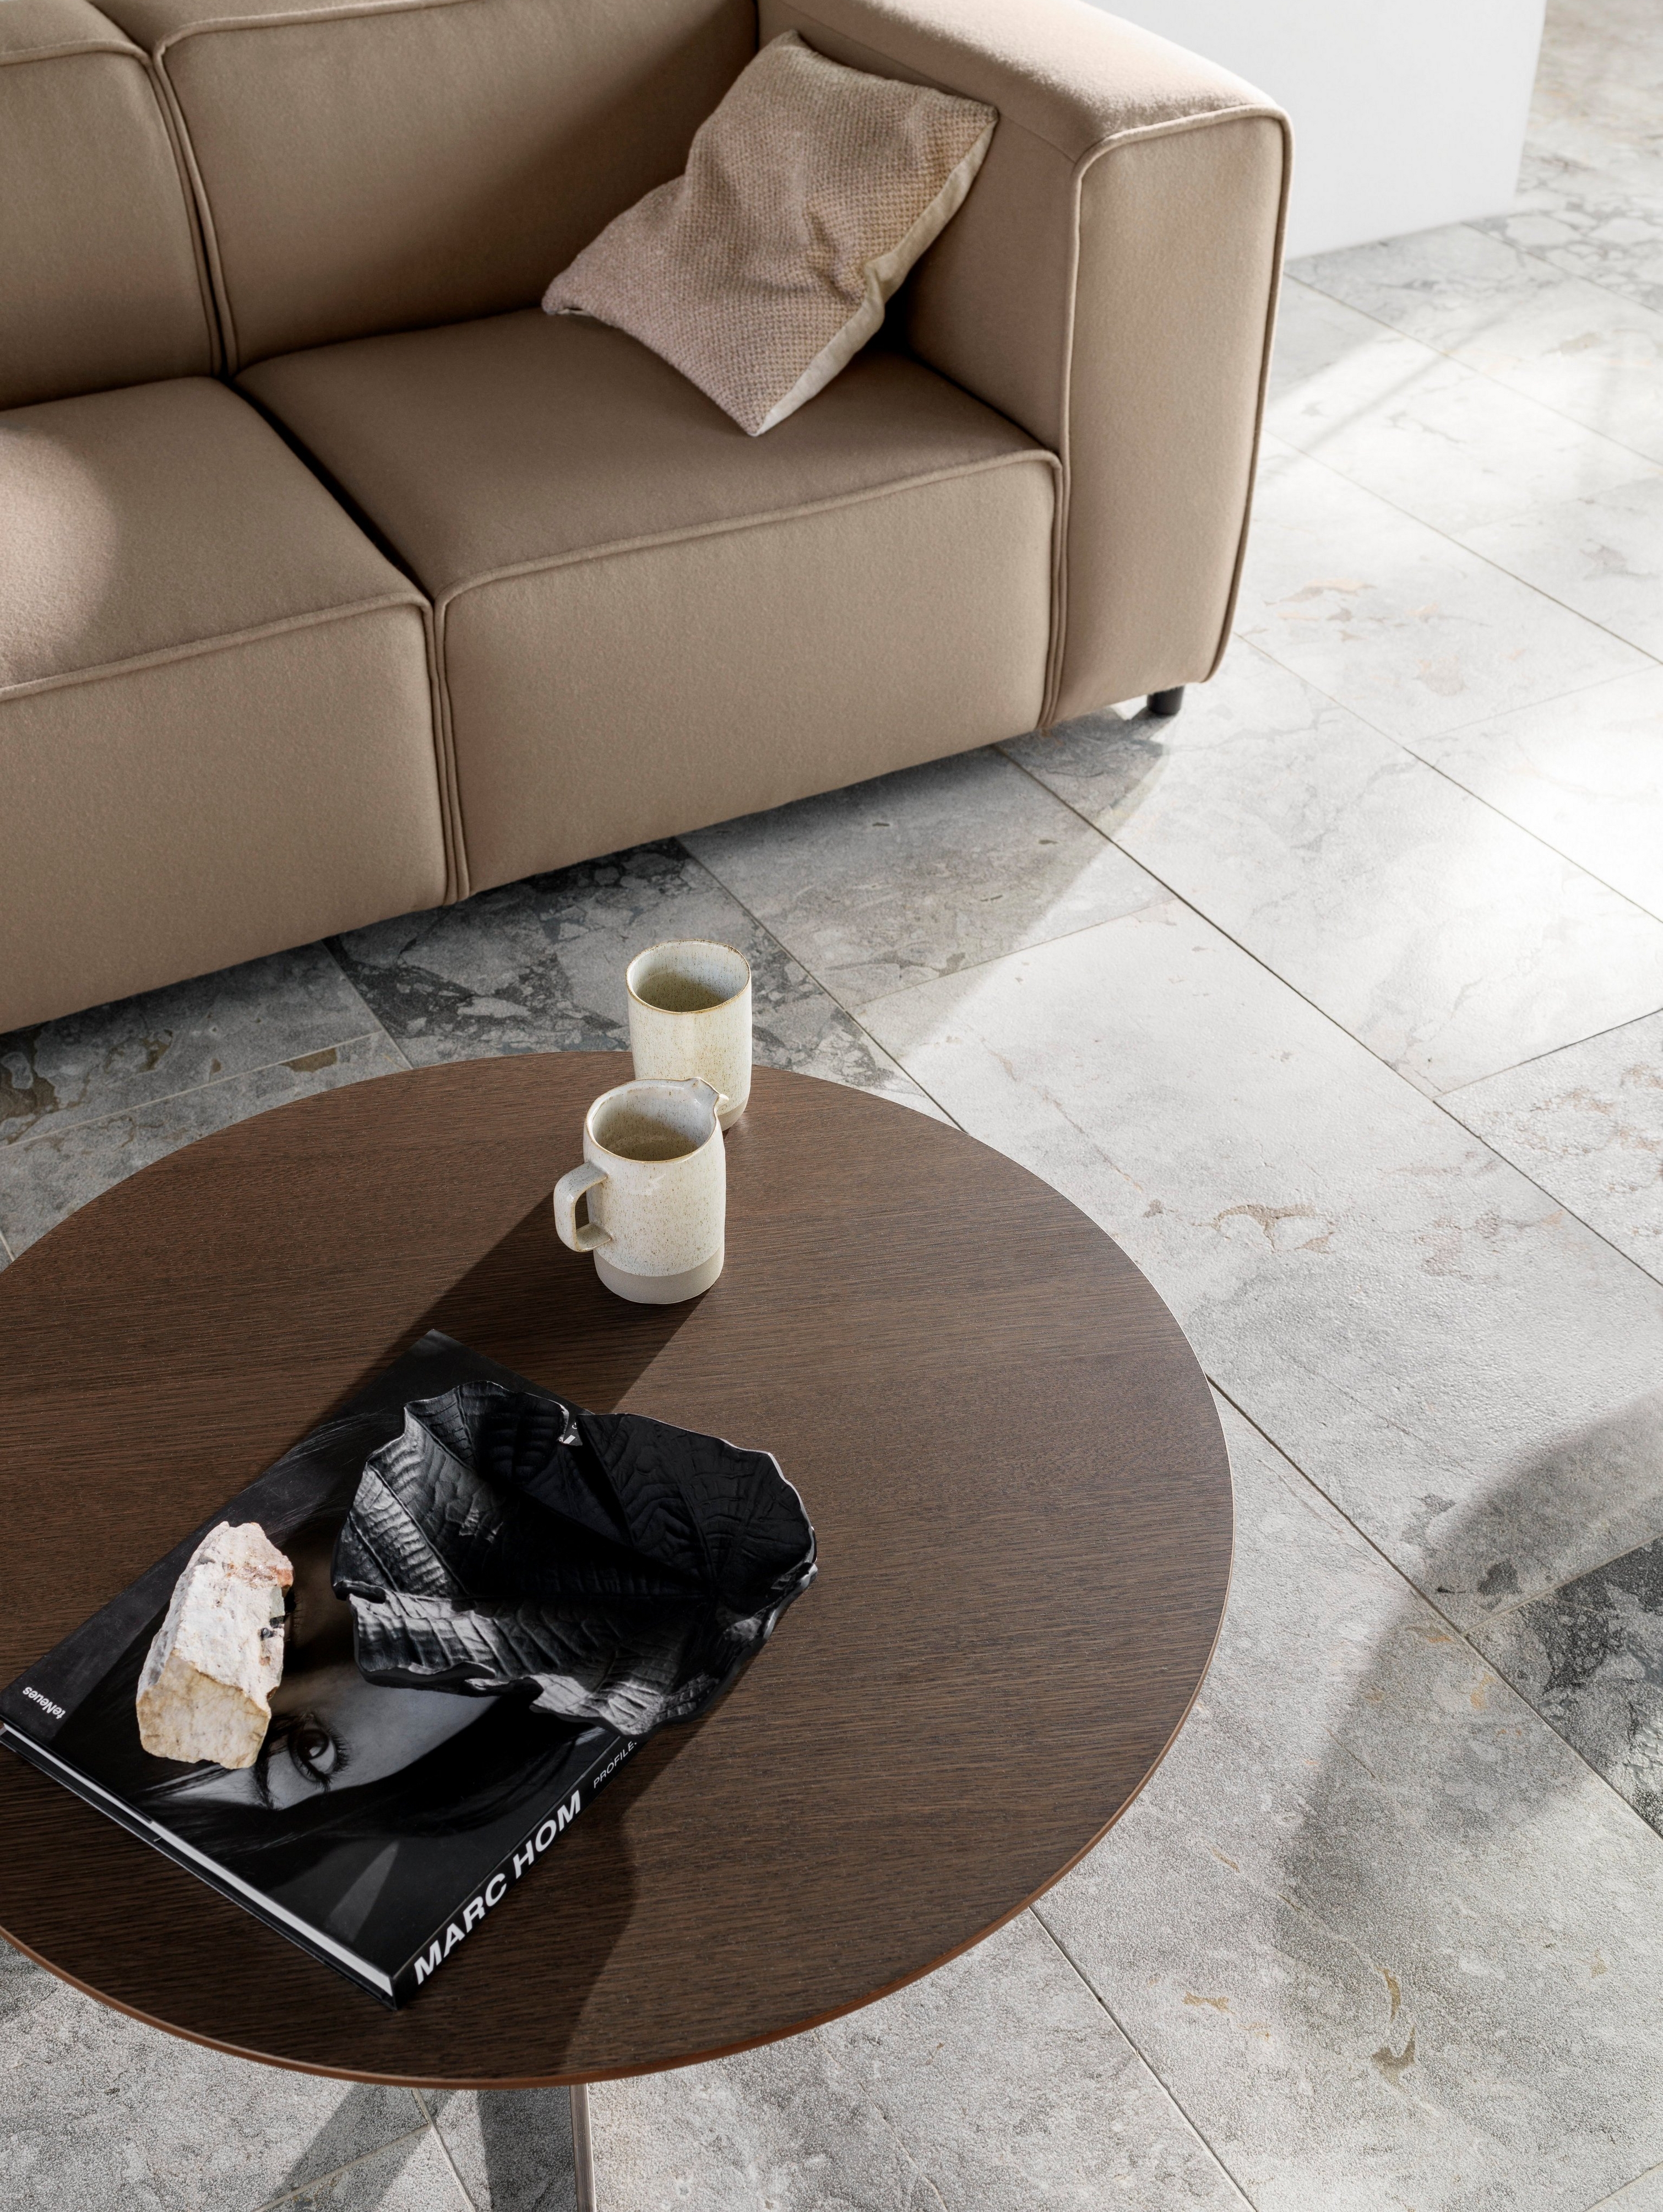 Диван Carmo с обивкой из ткани Wellington каменно-серого цвета и журнальный столик Sevilla.